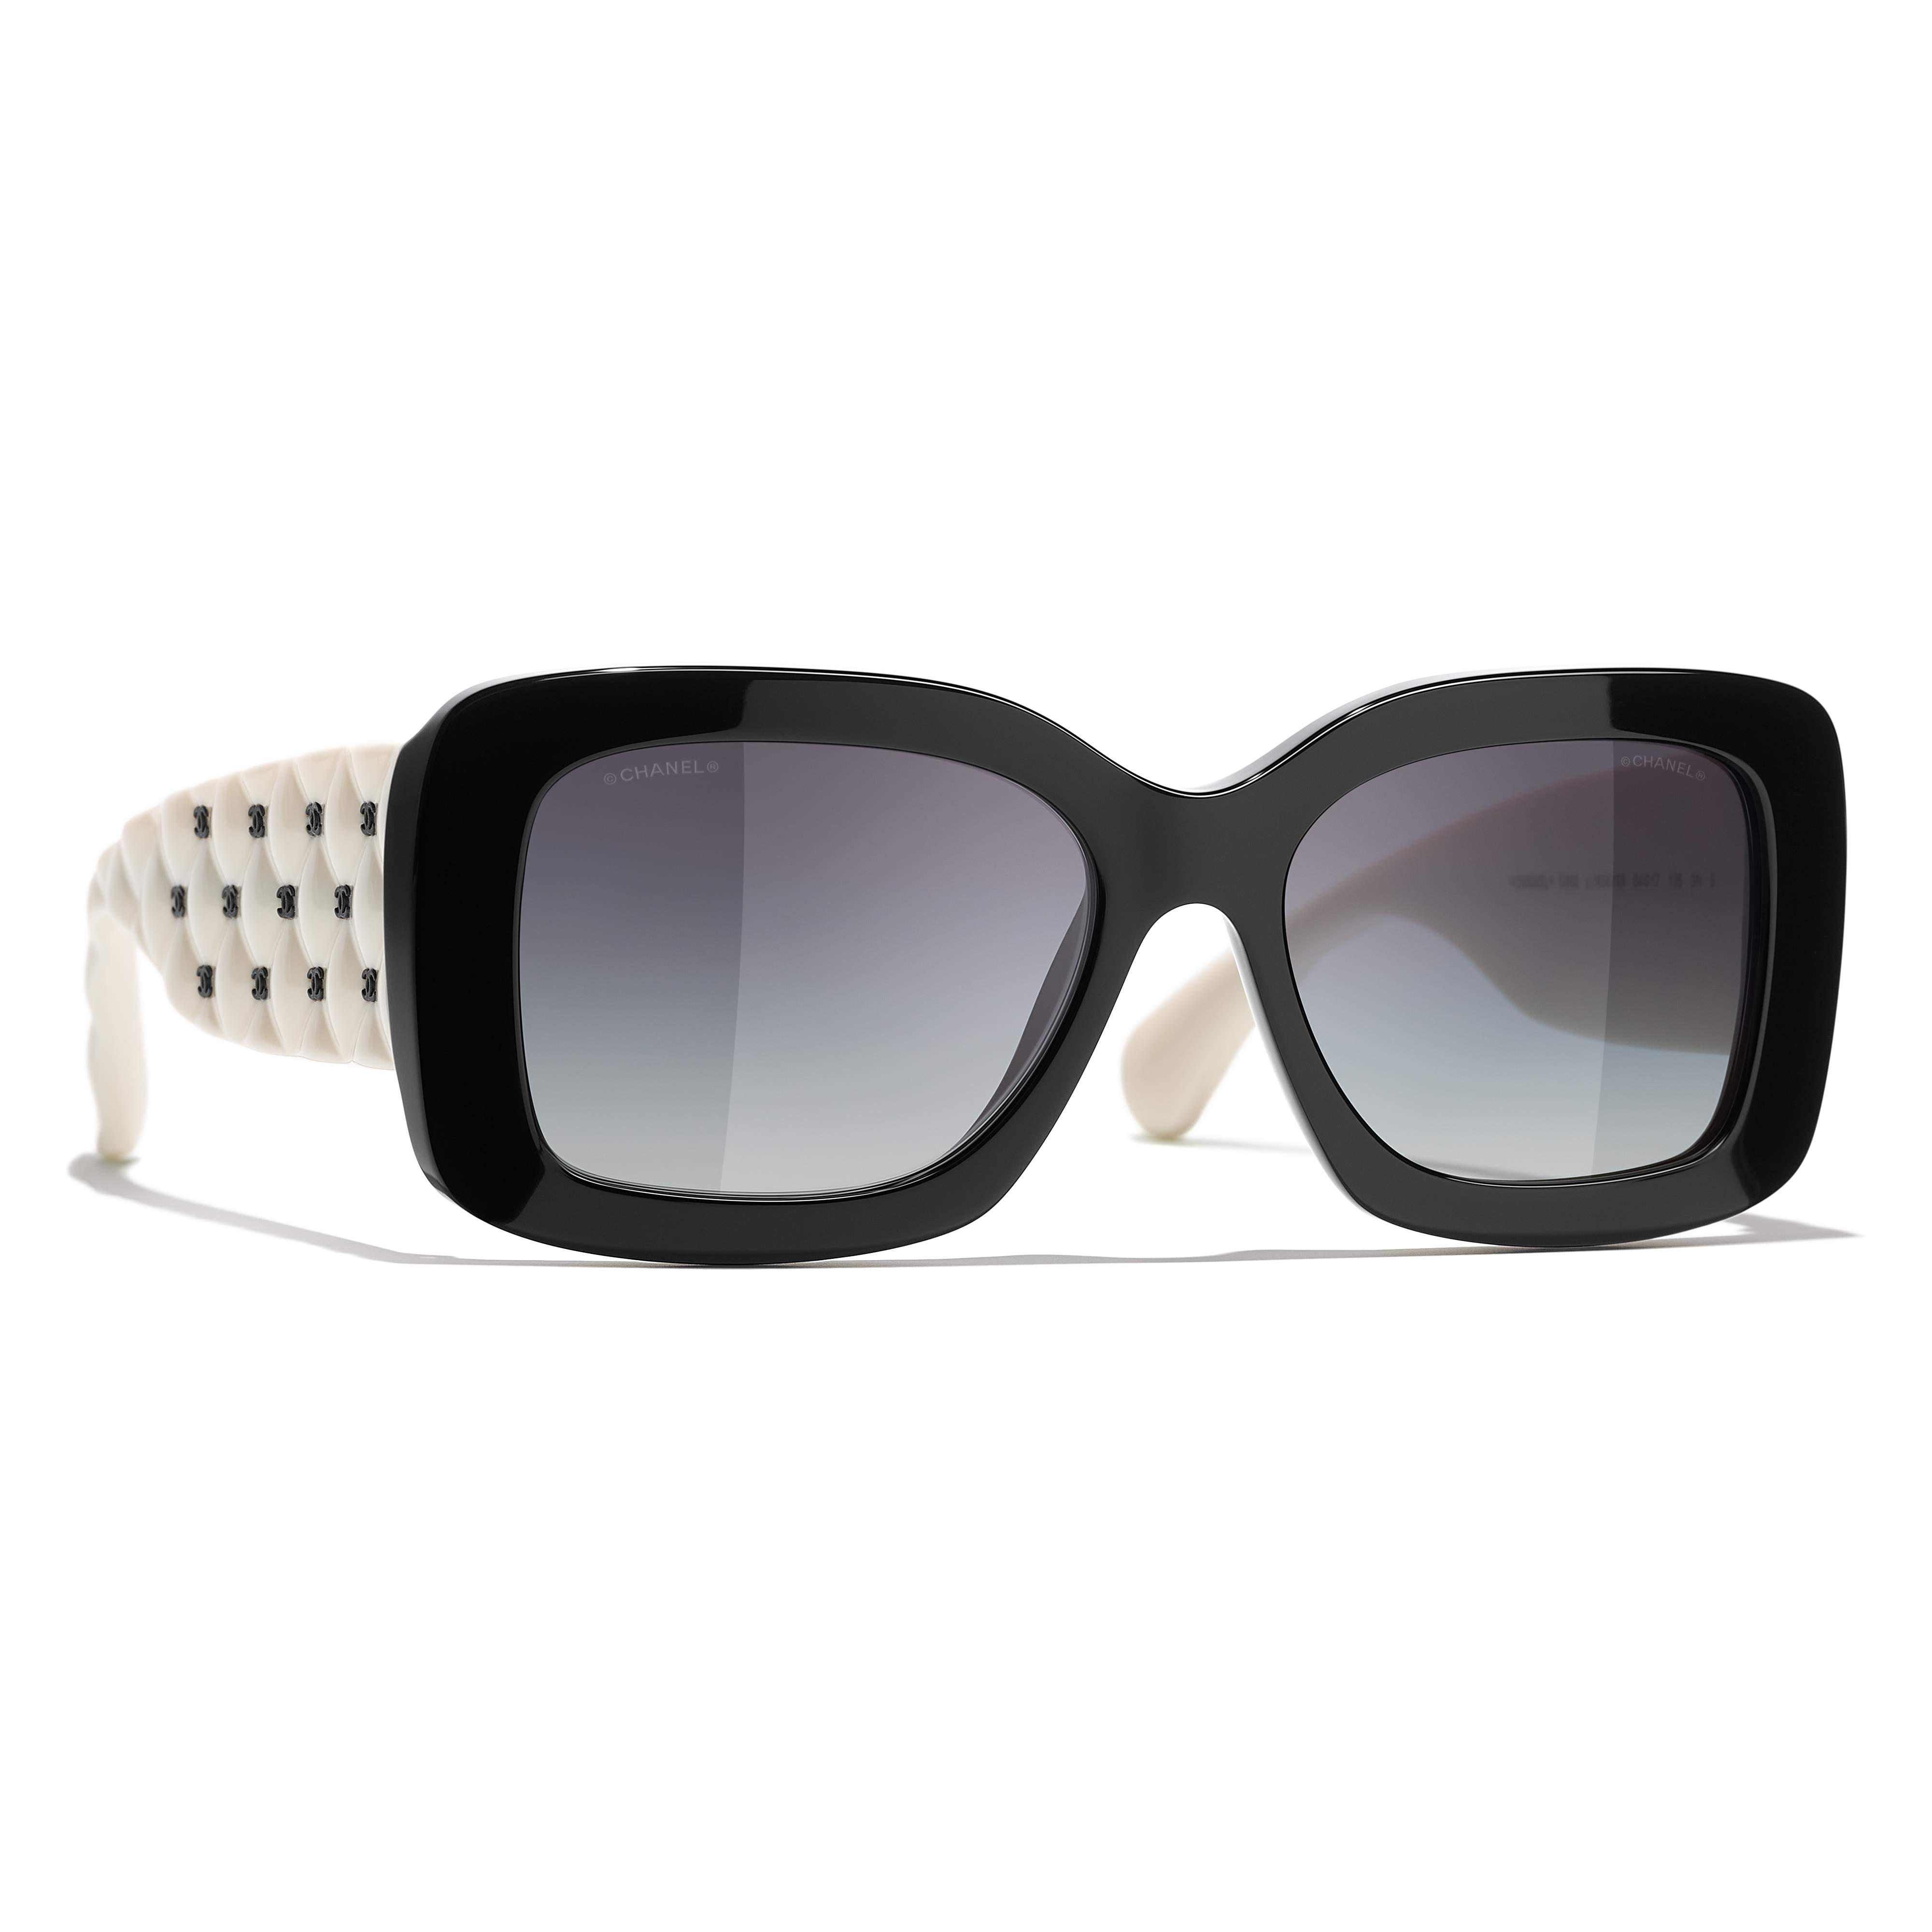 Chanel - Women's Ch5483 1656s6 Sunglasses - Black